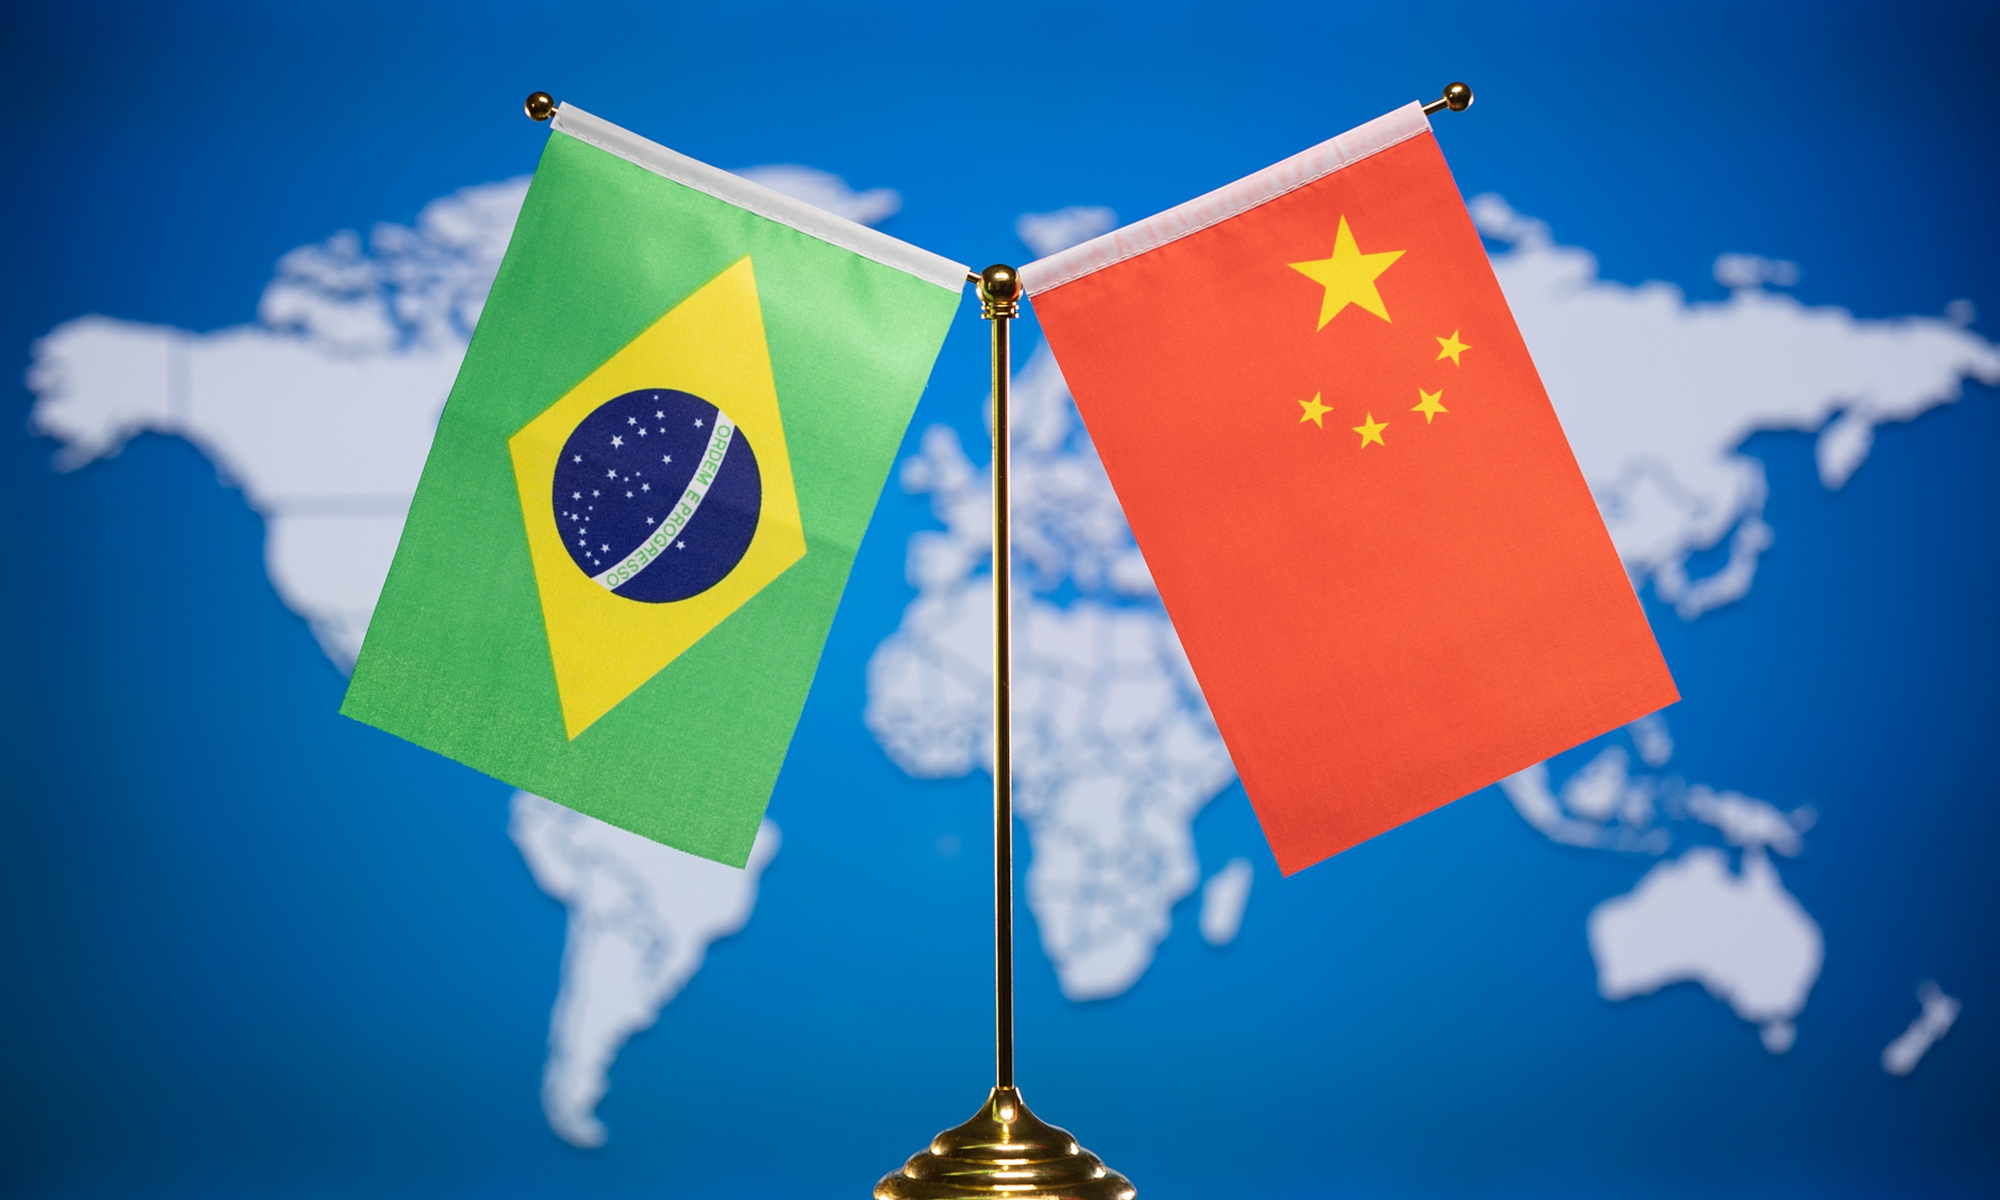 China and Brazil. Photo: VCG